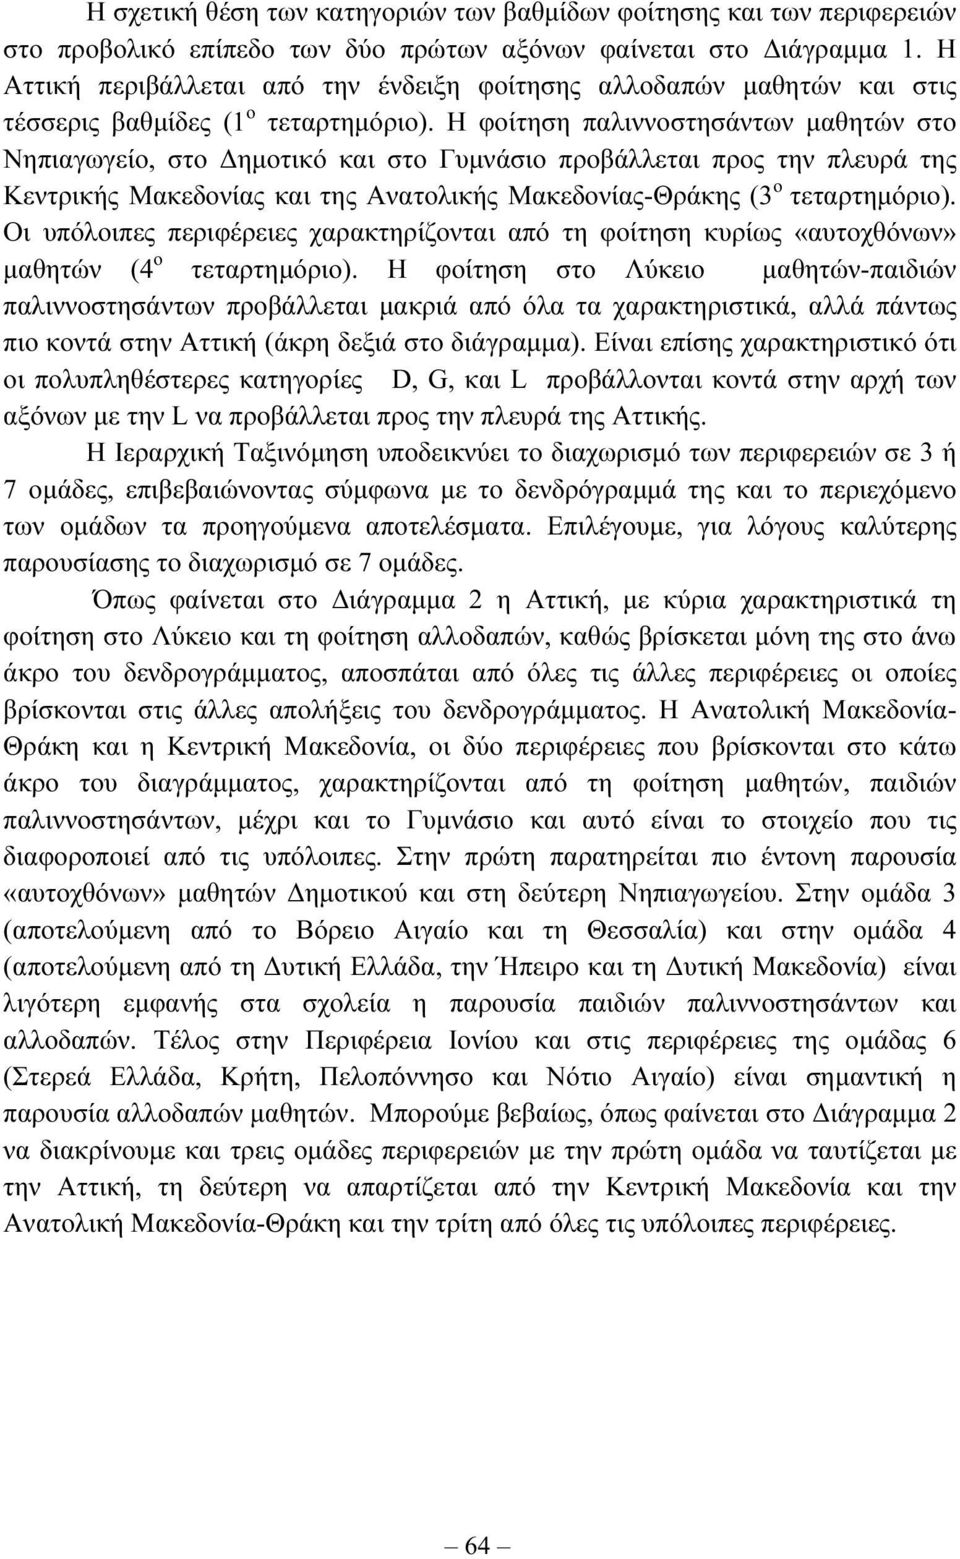 Η φοίτηση παλιννοσάντων µαθητών στο Νηπιαγωγείο, στο ηµοτικό και στο Γυµνάσιο προβάλλεται προς την πλευρά της Κεντρικής Μακεδονίας και της Ανατολικής Μακεδονίας-Θράκης (3 ο τεταρτηµόριο).